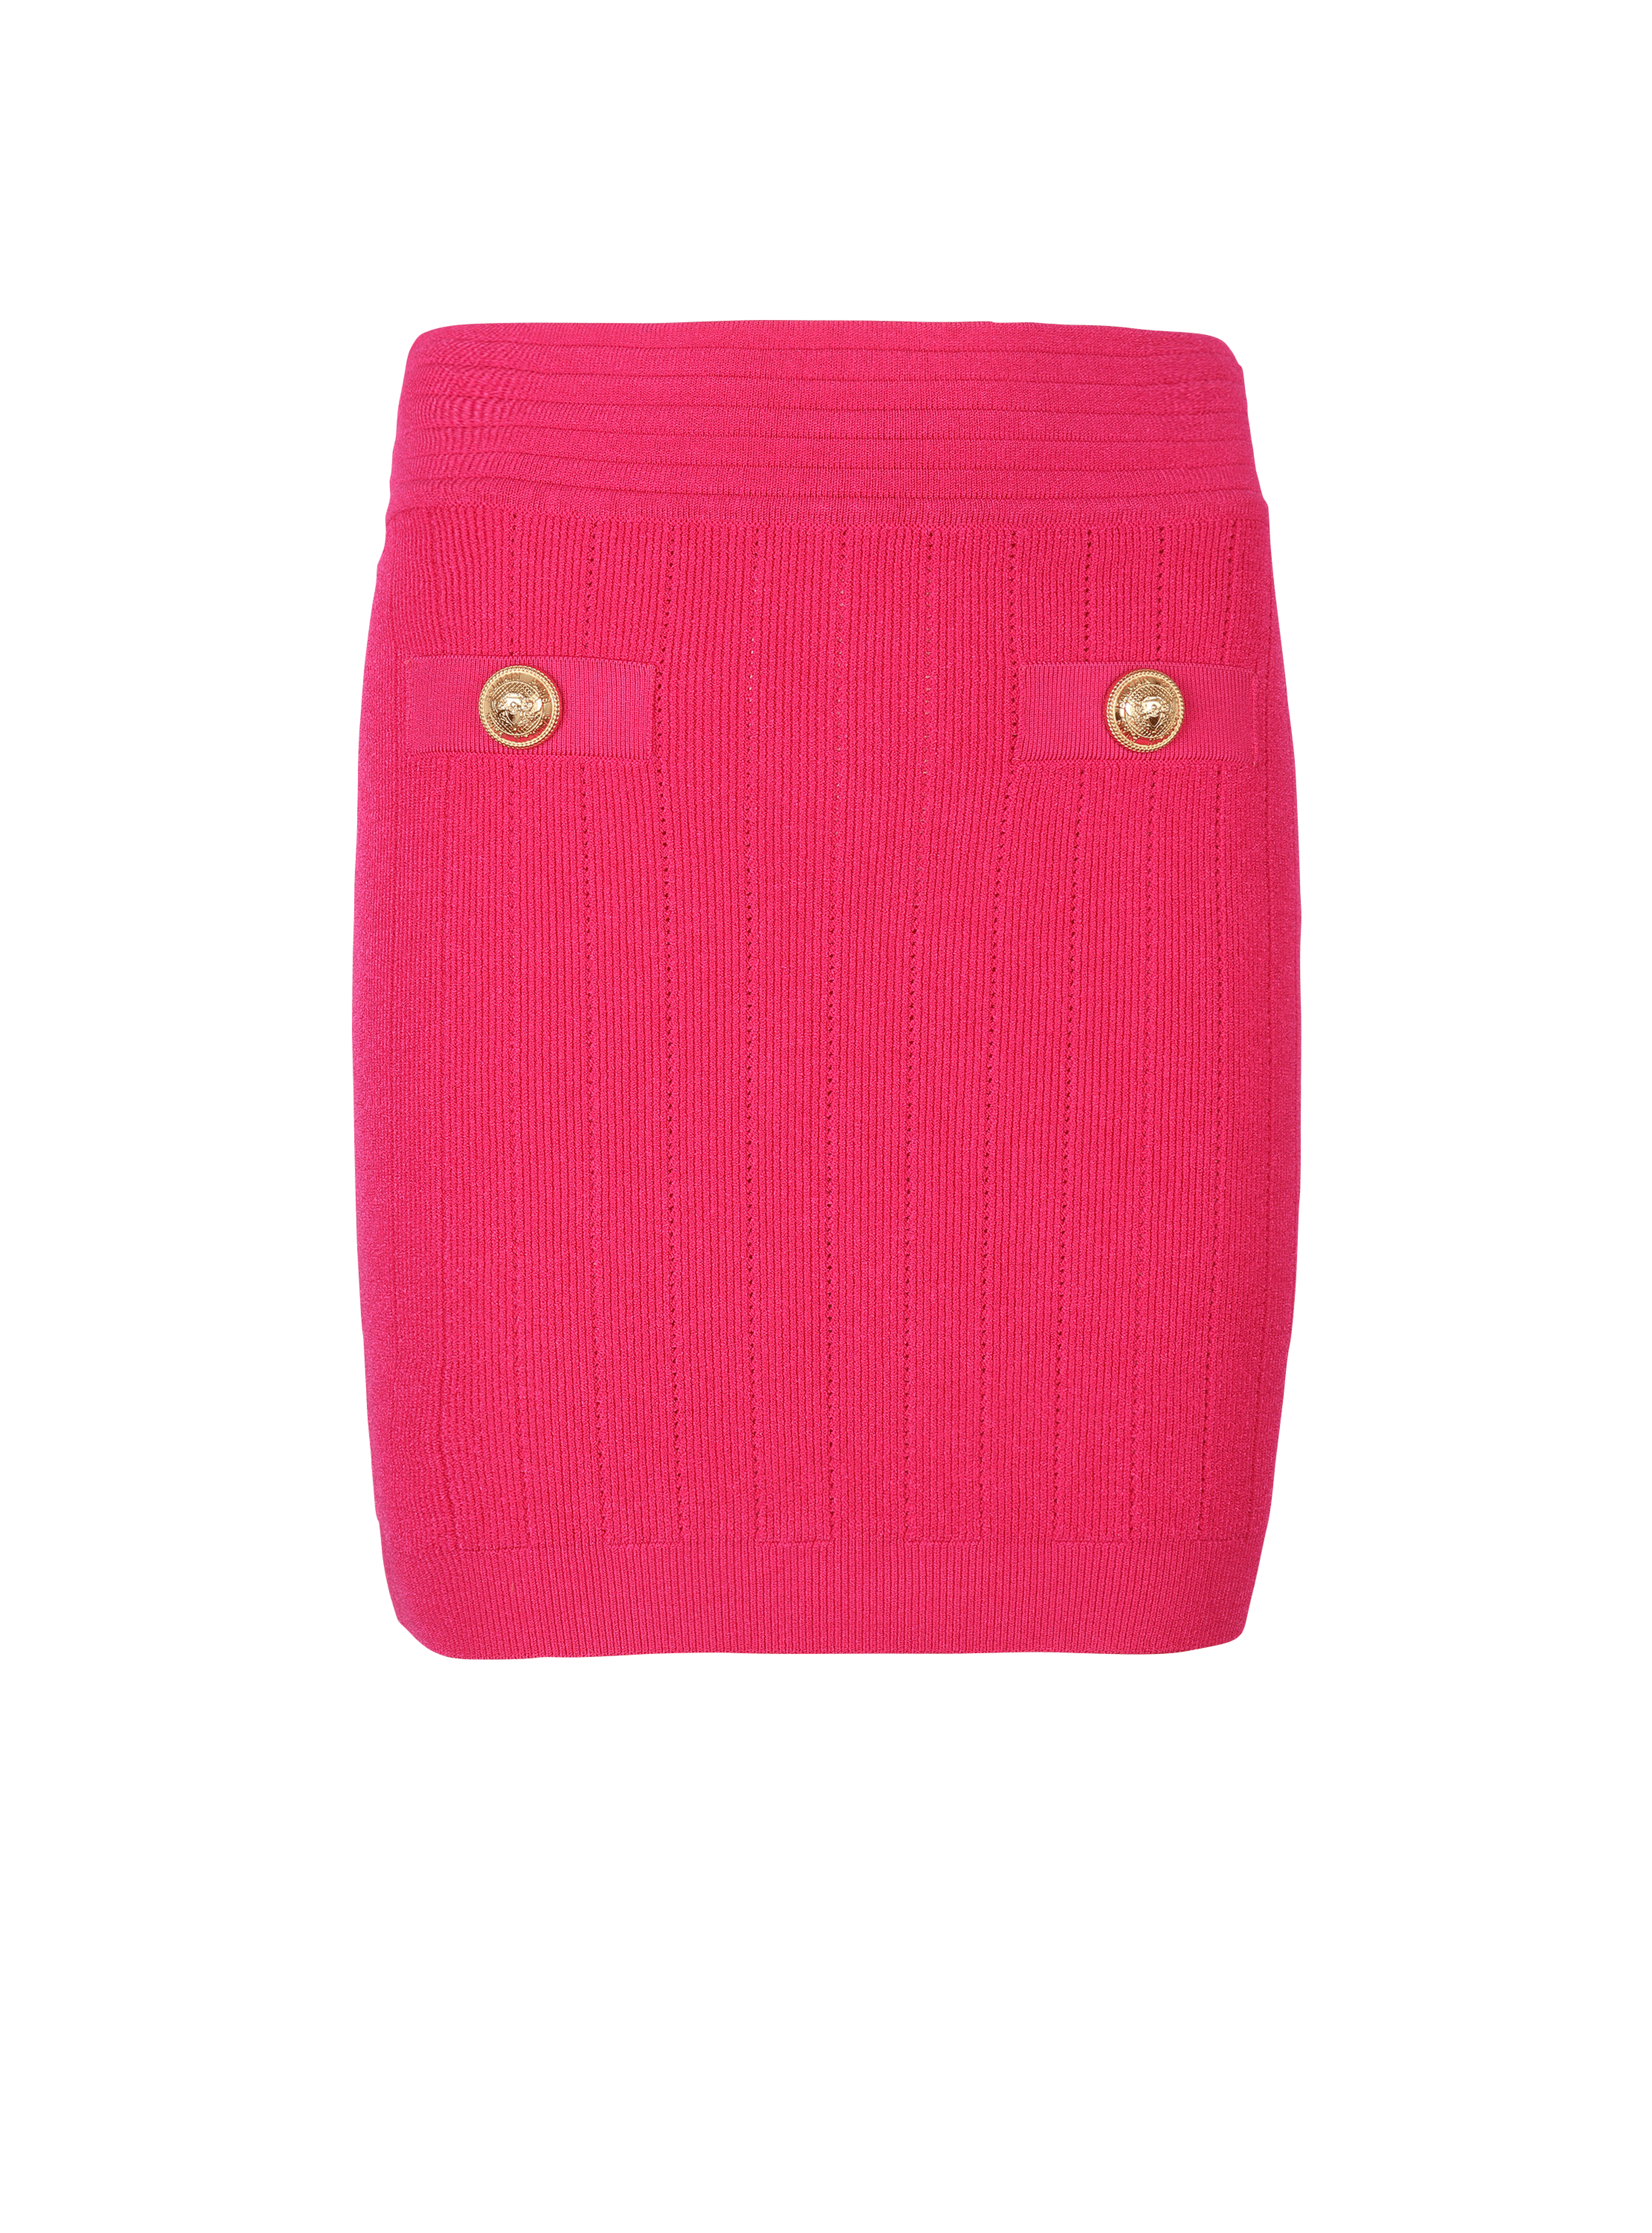 Short knit skirt, pink